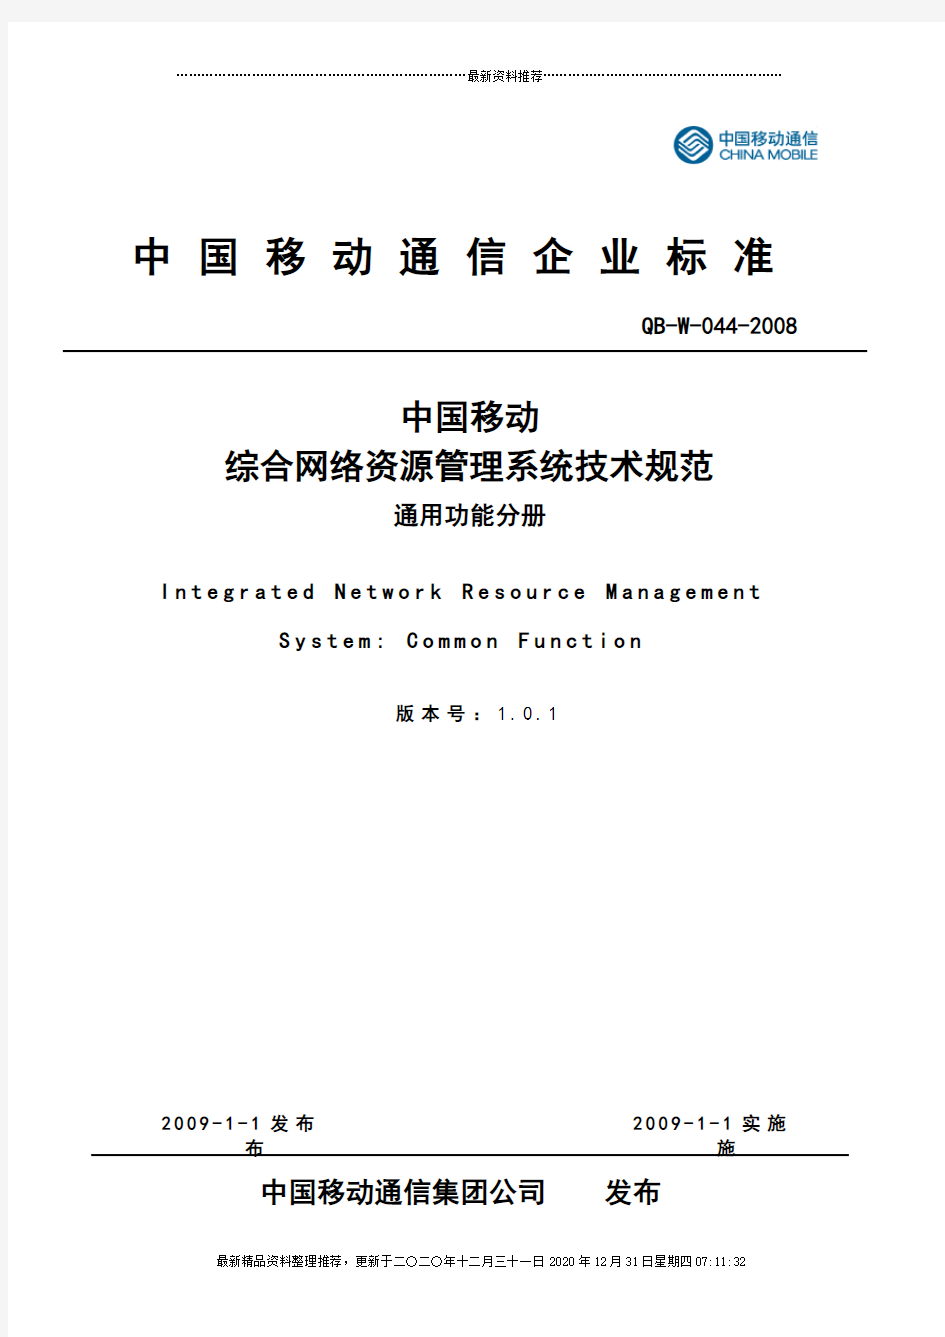 03-01-中国移动综合网络资源管理系统技术规范 通用功能分册V101_